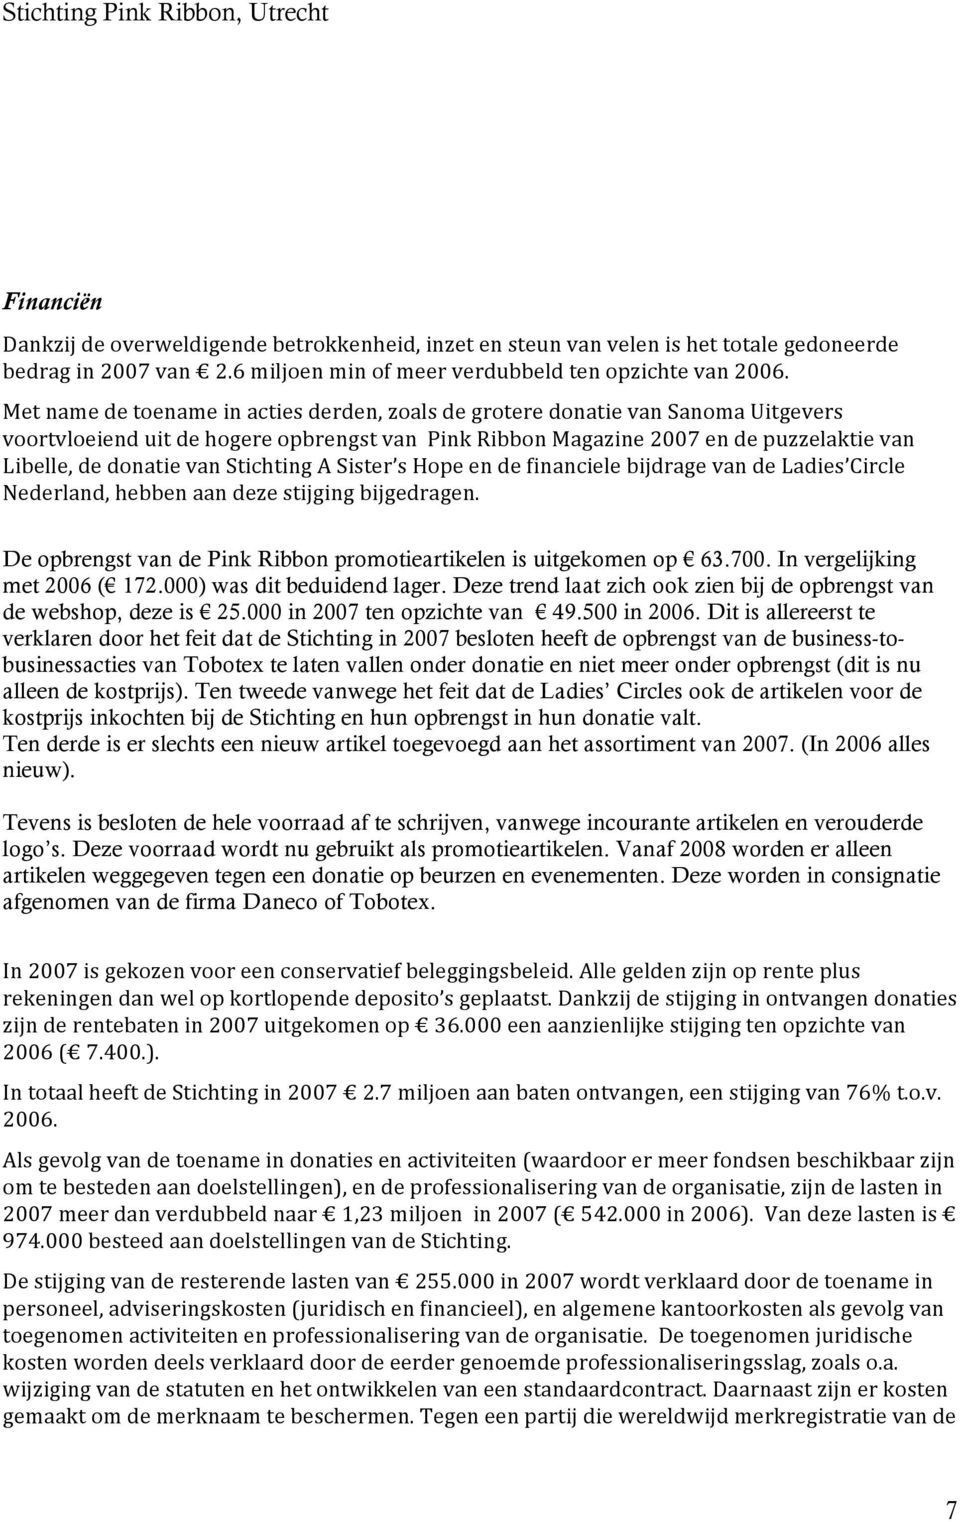 shopeendefinancielebijdragevandeladies Circle Nederland,hebbenaandezestijgingbijgedragen. De opbrengst van de Pink Ribbon promotieartikelen is uitgekomen op 63.700. In vergelijking met 2006 ( 172.